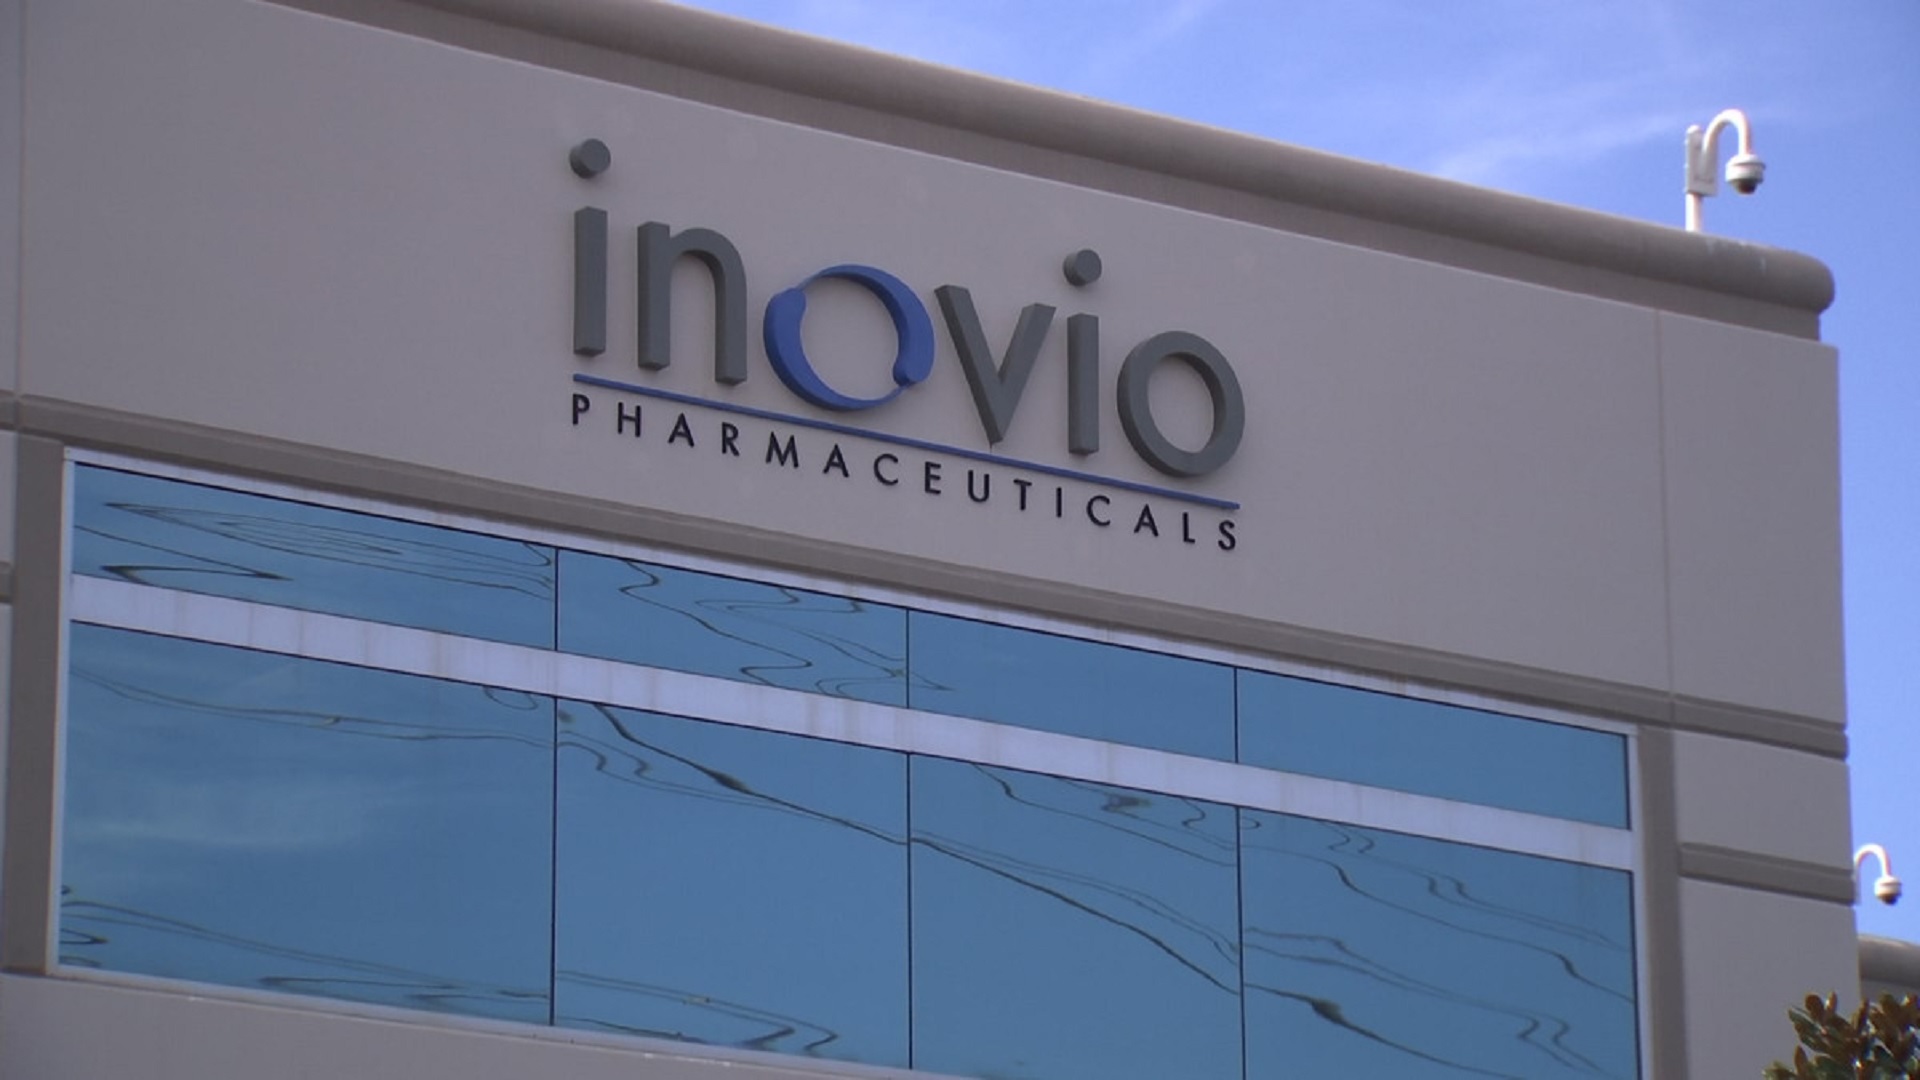 Κοντά στην παραγωγή εμβολίου η αμερικανική Inovio Pharma